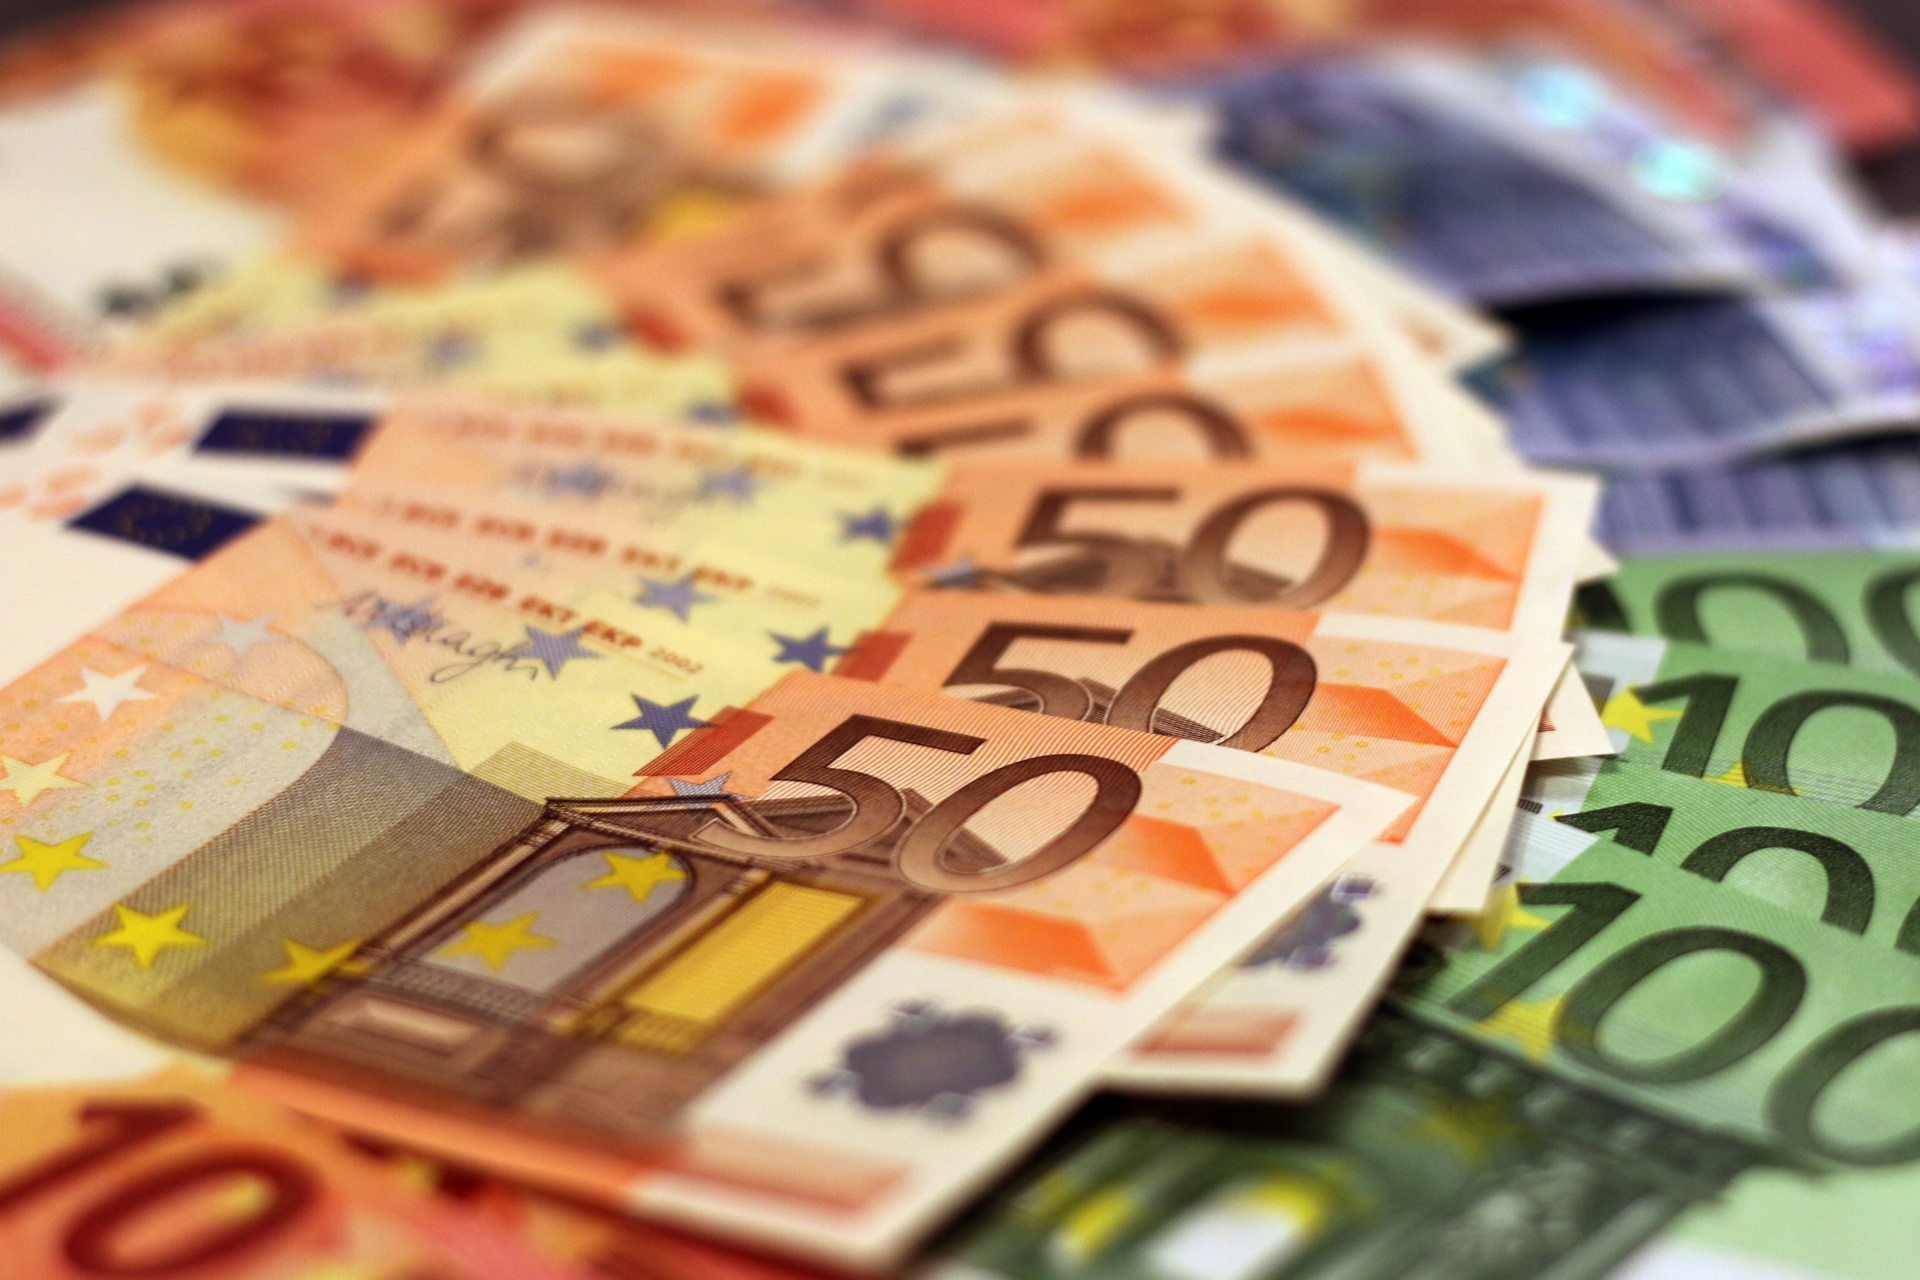 Euros Billets de Banque